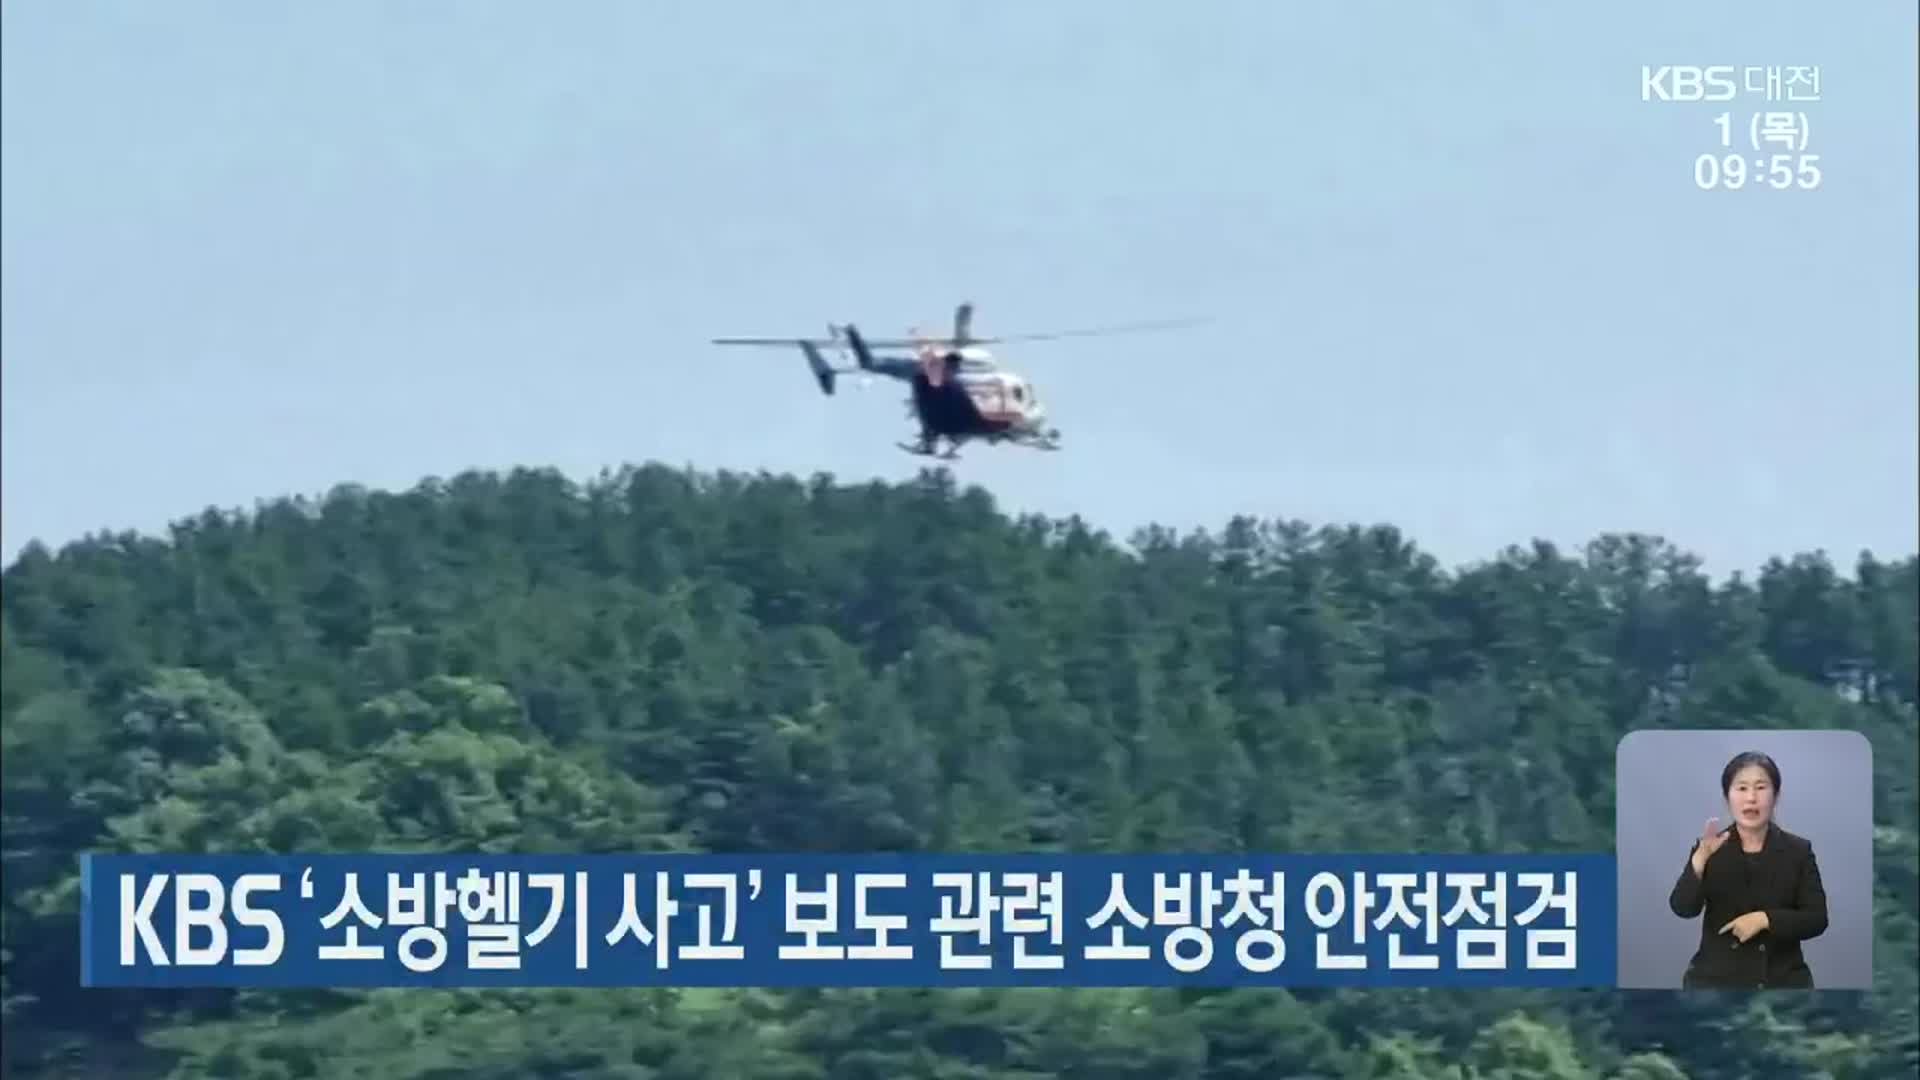 KBS ‘소방헬기 사고’ 보도 관련 소방청 안전점검